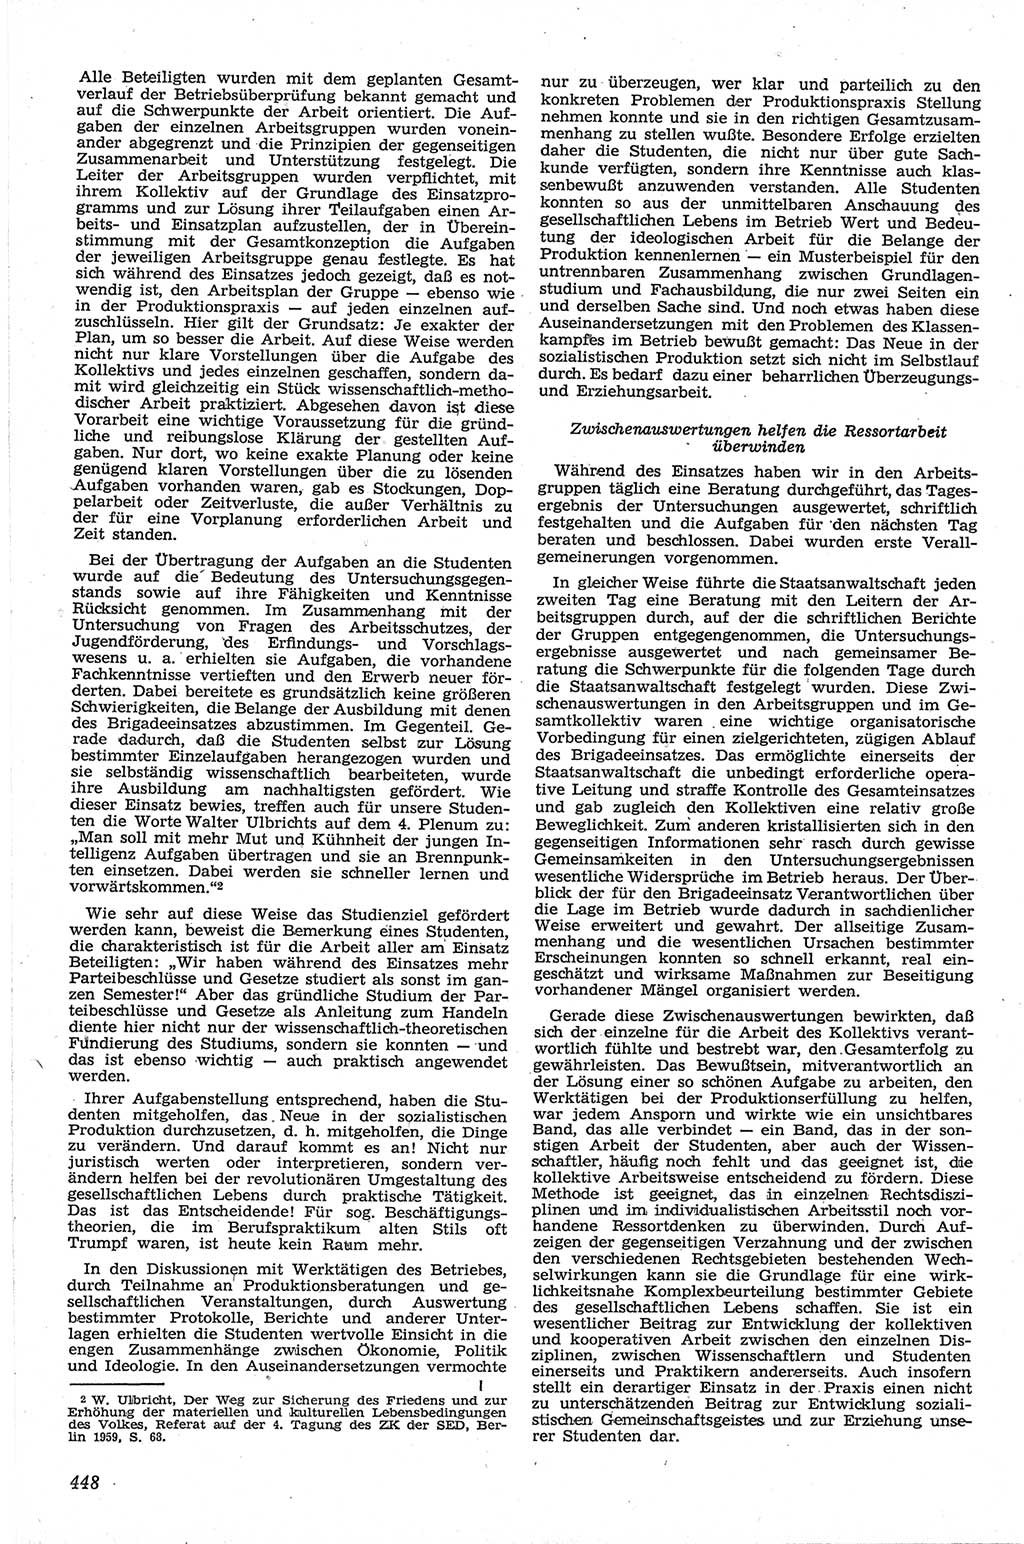 Neue Justiz (NJ), Zeitschrift für Recht und Rechtswissenschaft [Deutsche Demokratische Republik (DDR)], 13. Jahrgang 1959, Seite 448 (NJ DDR 1959, S. 448)